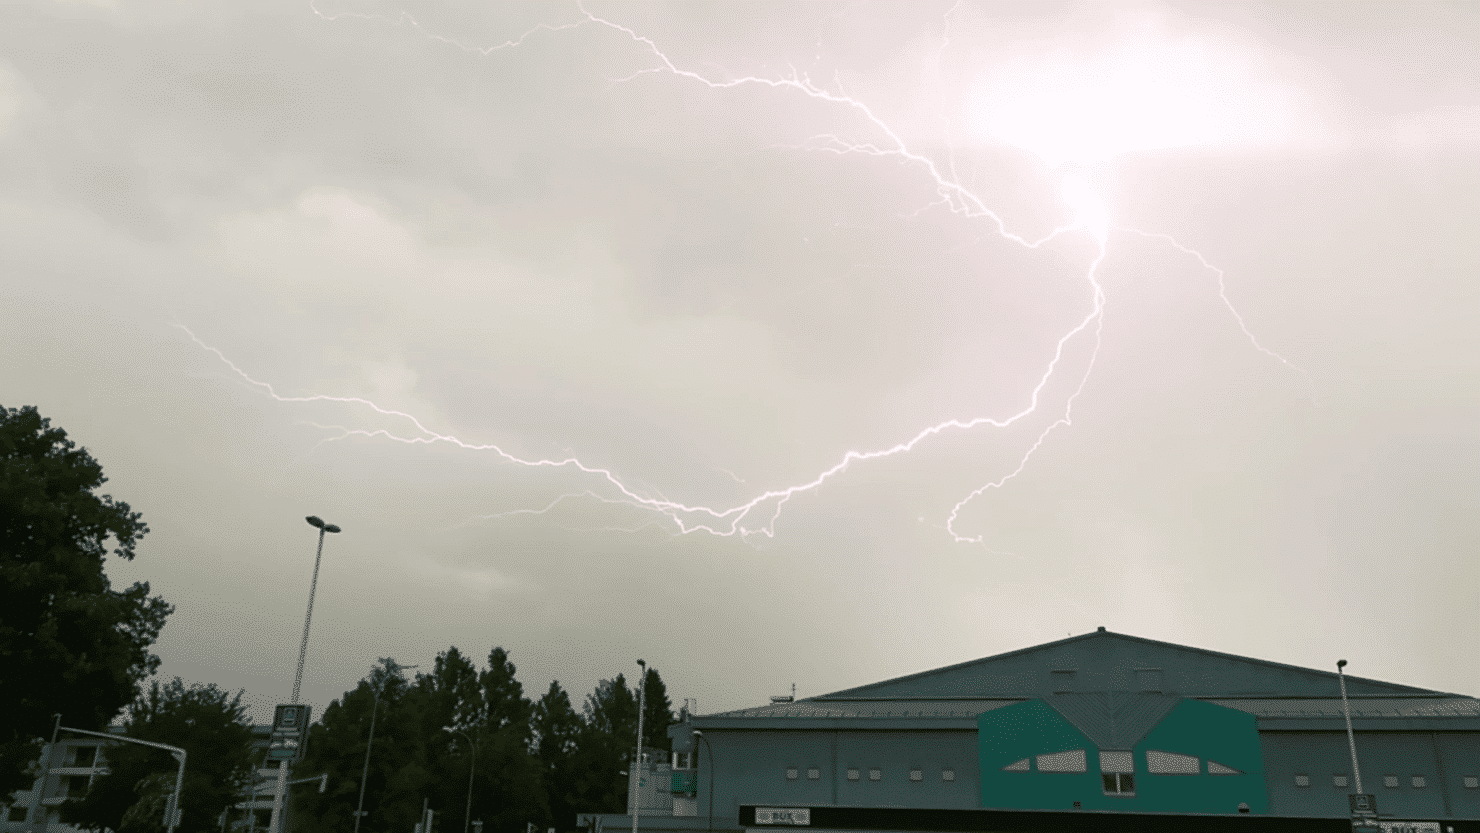 Die Leserin drückte genau zum richtigen Zeitpunkt den Auslöser ihrer Kamera und schoss dieses tolle Blitz-Foto.